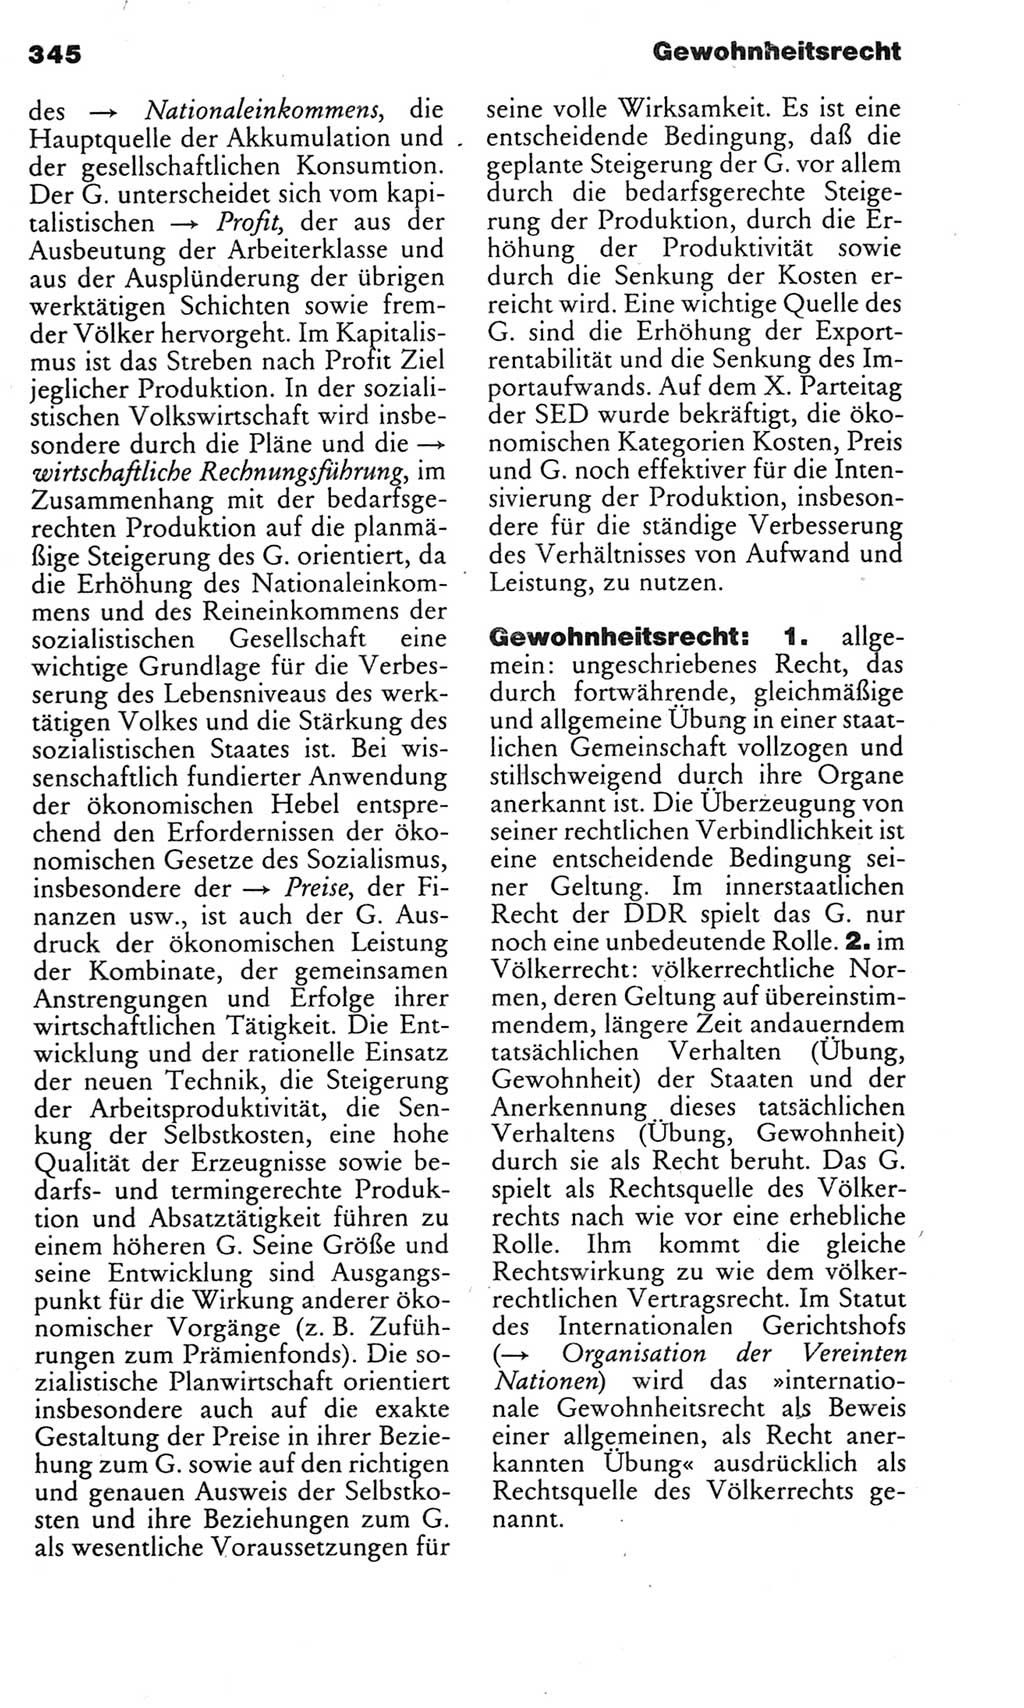 Kleines politisches Wörterbuch [Deutsche Demokratische Republik (DDR)] 1983, Seite 345 (Kl. pol. Wb. DDR 1983, S. 345)